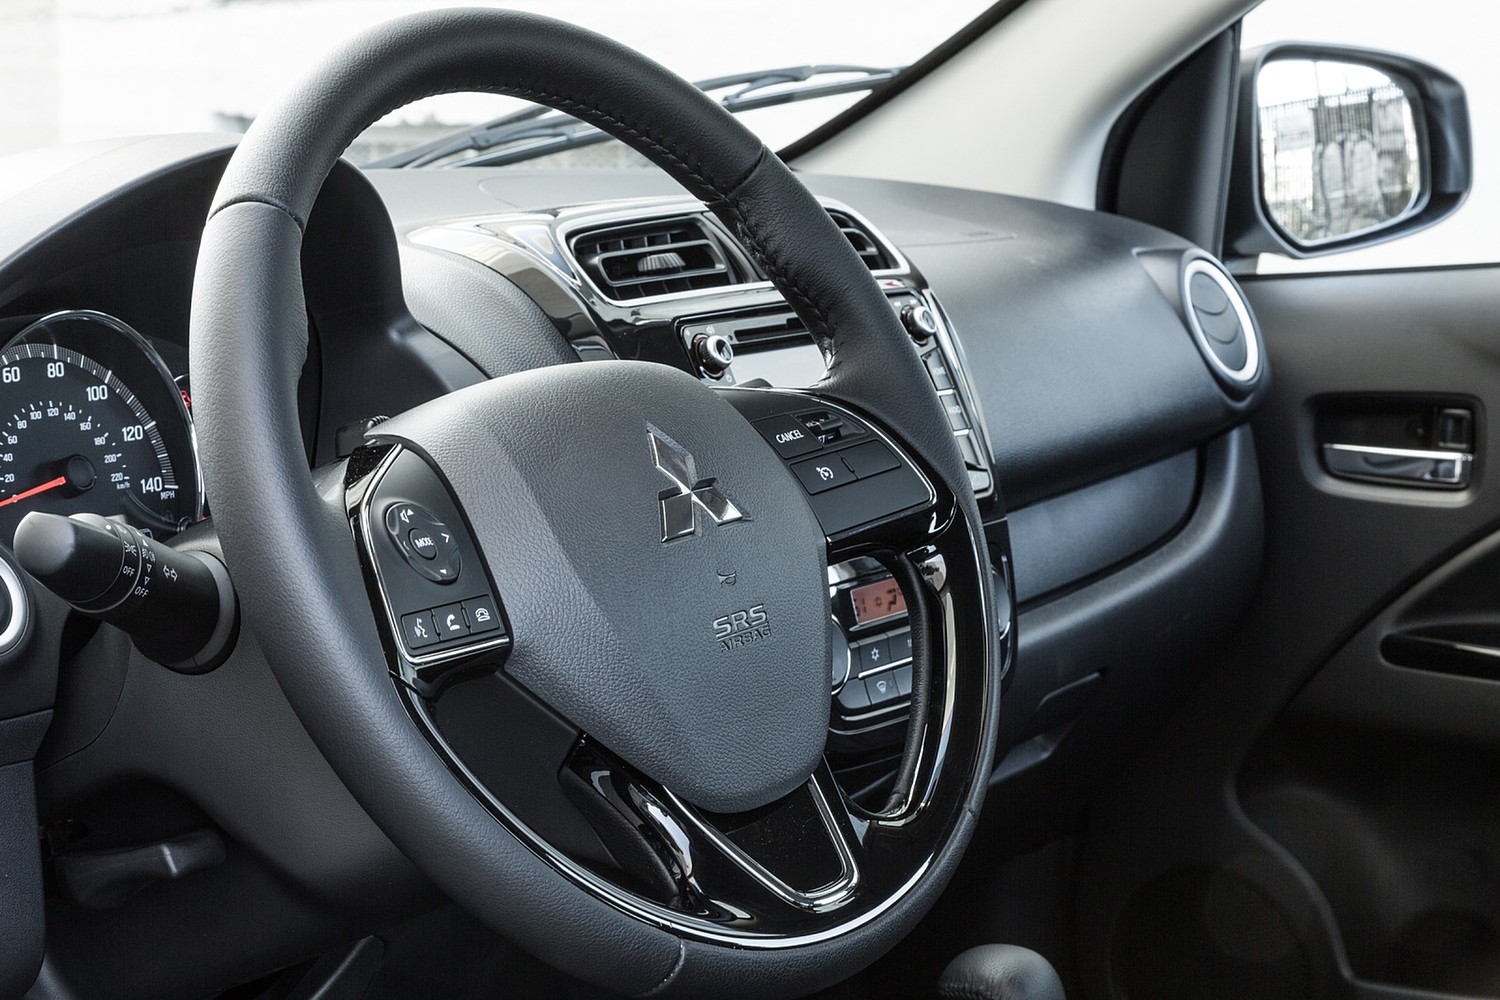 Mitsubishi Mirage G4 SE Sedan Steering Wheel Detail (2017 model year shown)